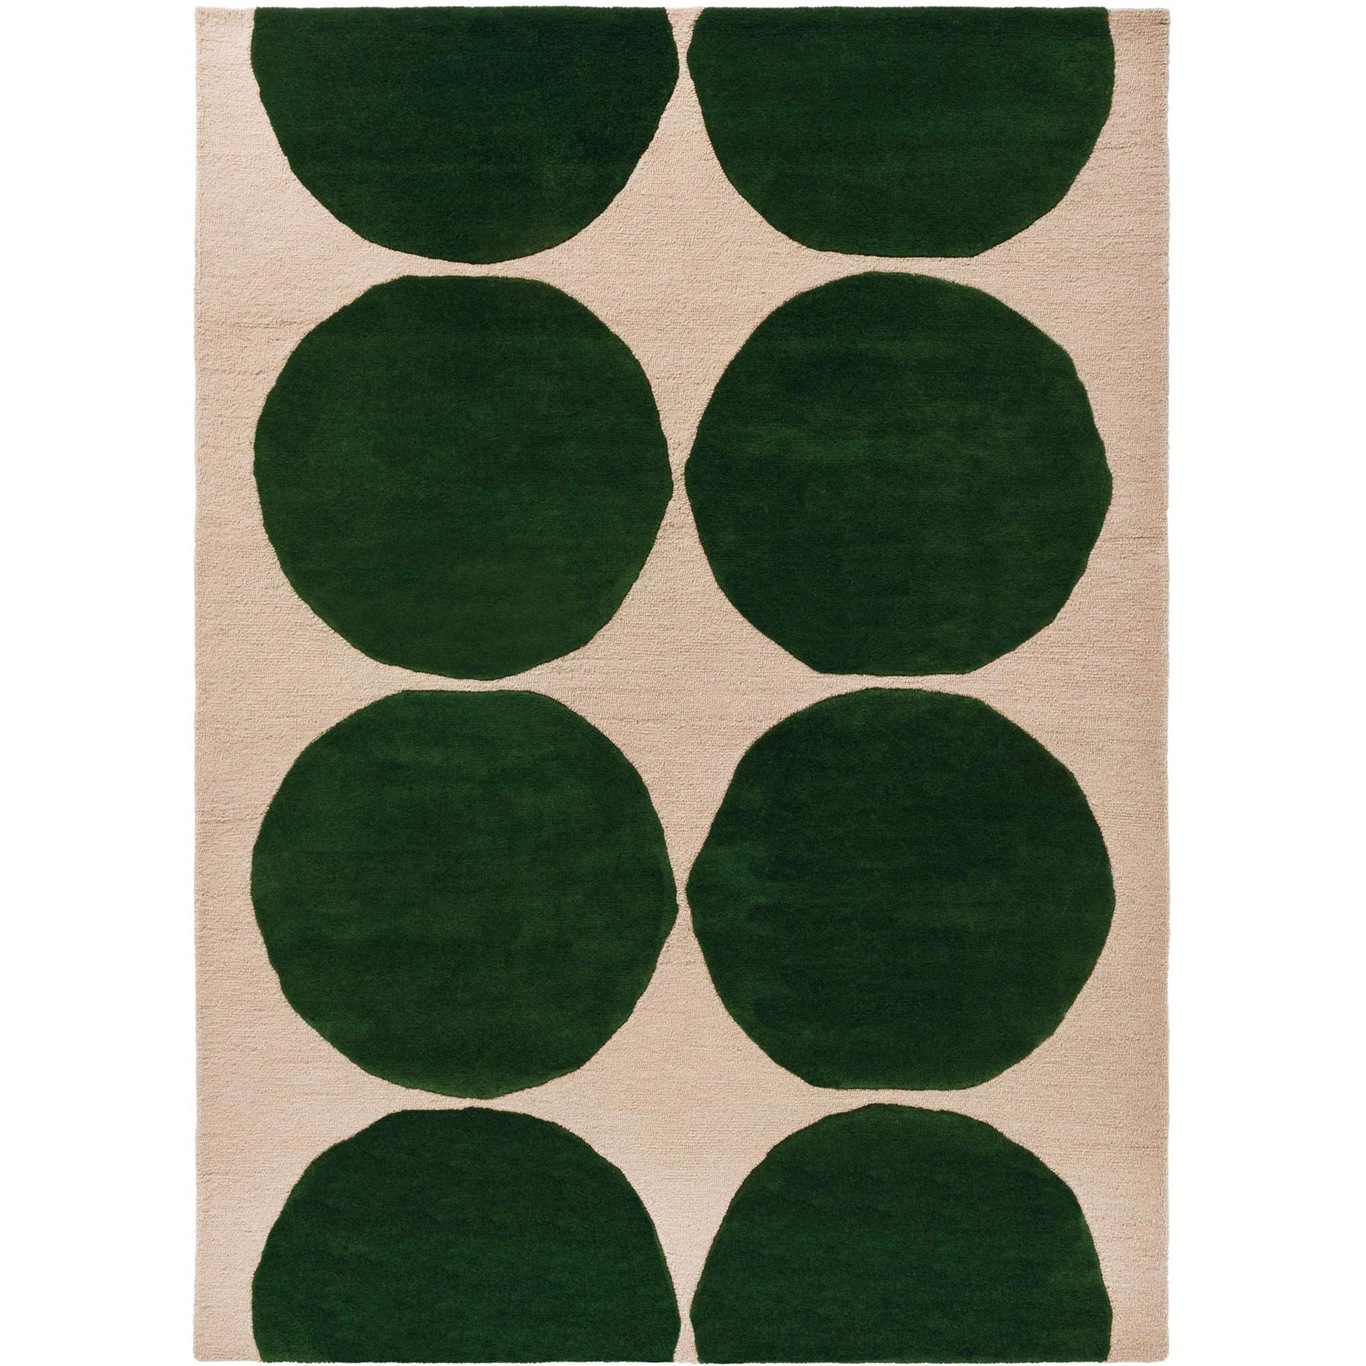 Marimekko Isot Kivet Teppe 200x300 cm, Grønn